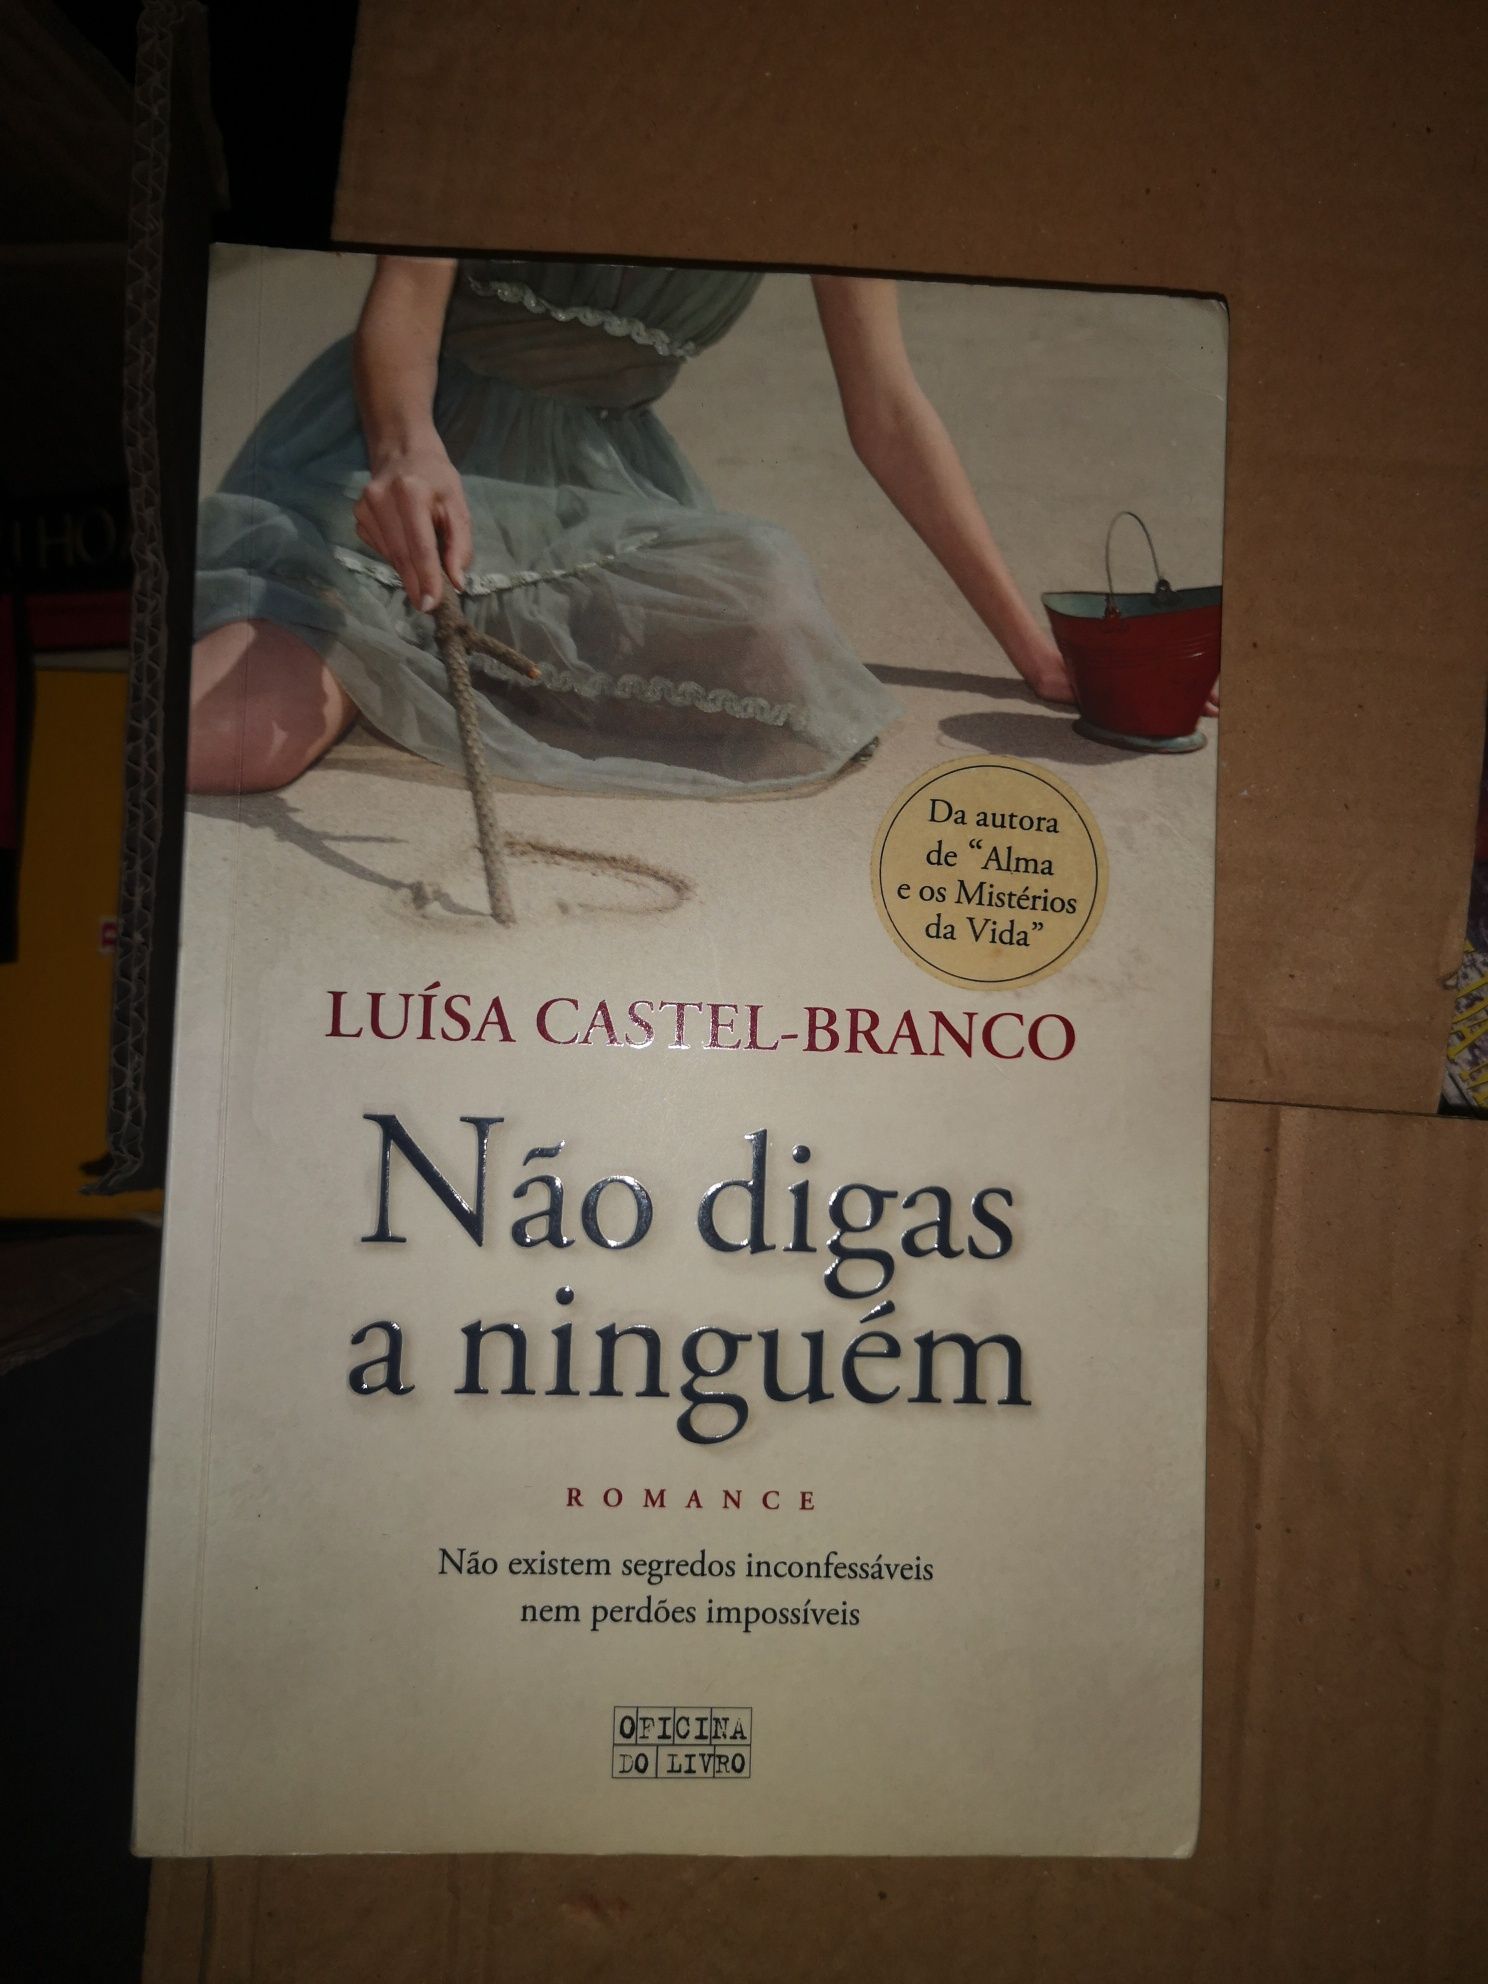 Livro de Luísa Castelo Branco " Não digas a ninguém"